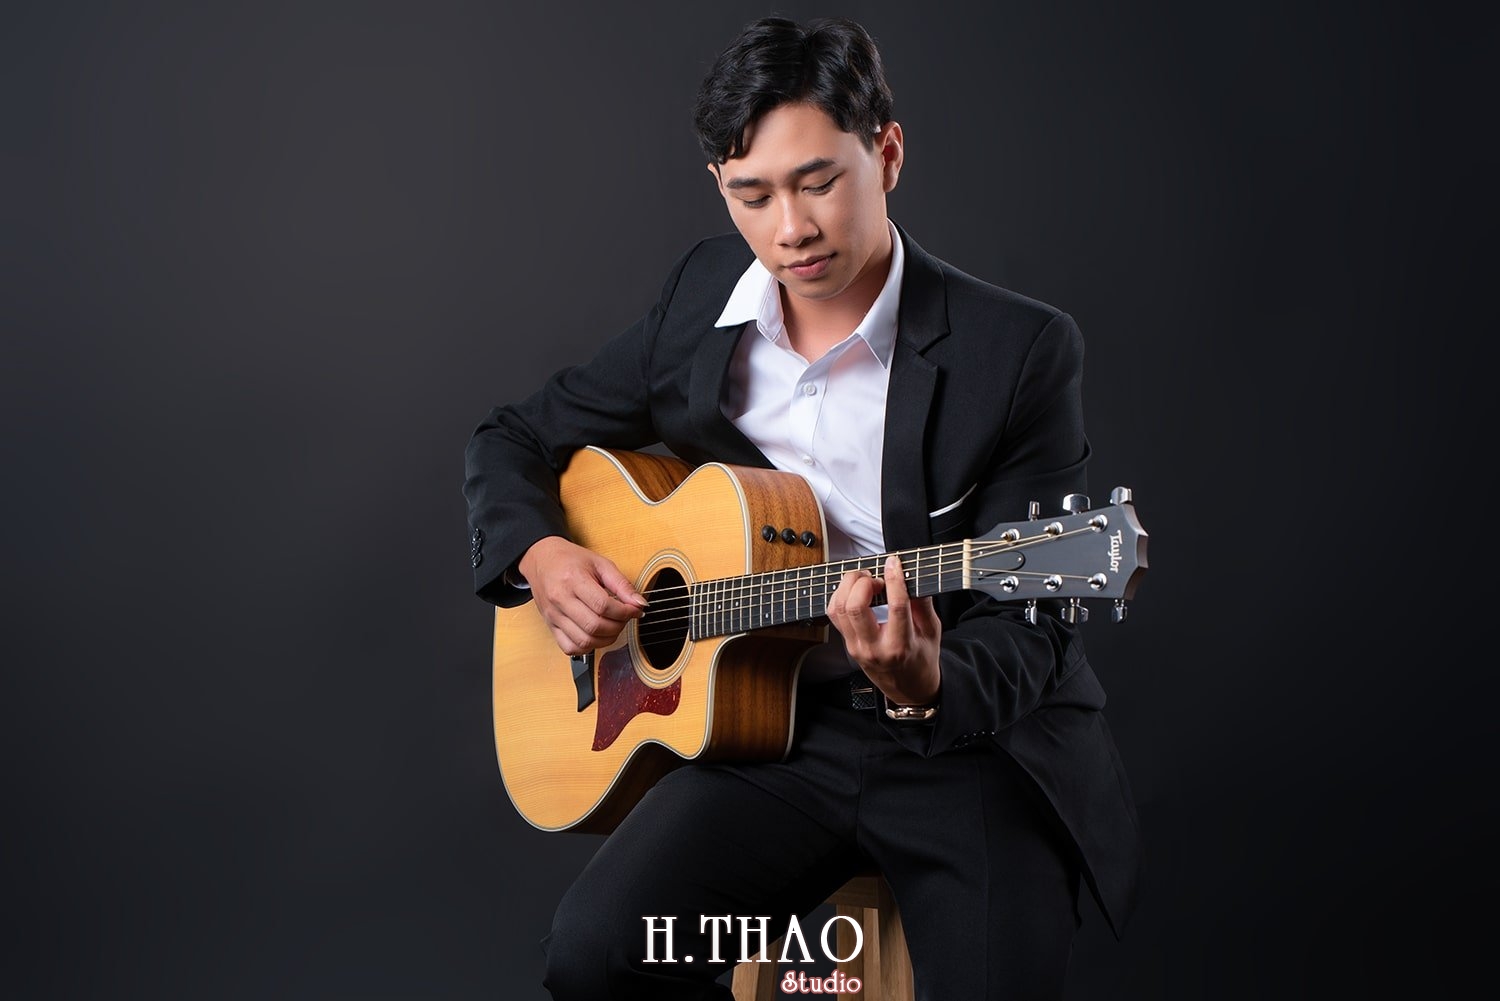 Anh profile 21 - 35 cách tạo dáng chụp ảnh nam ngầu chất ngất - HThao Studio